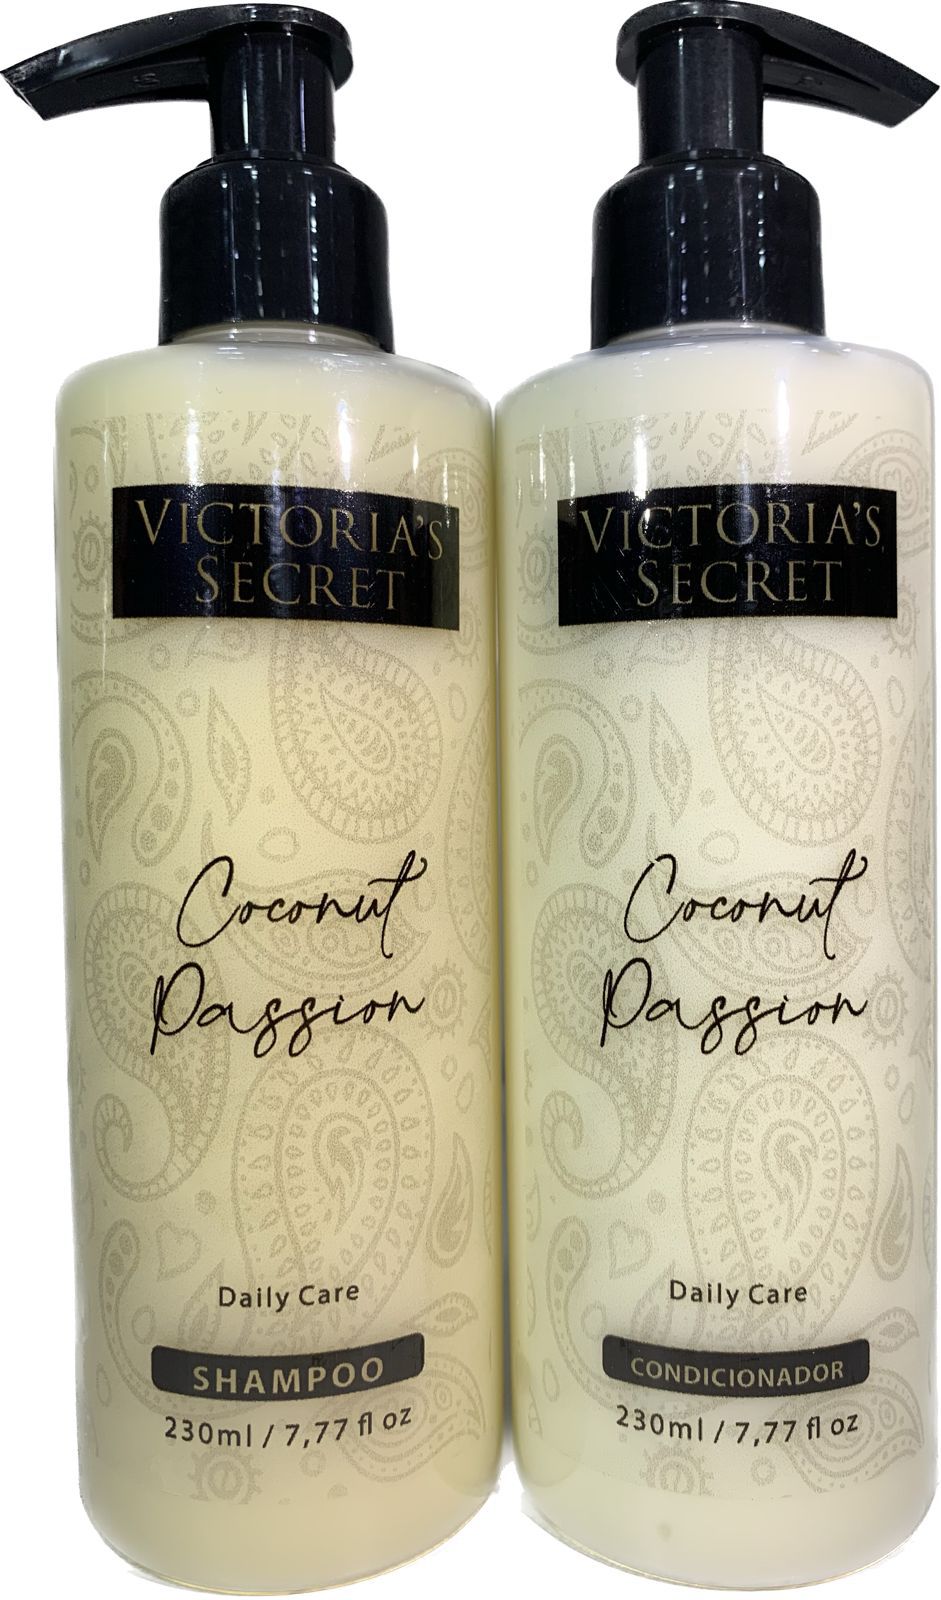 Kit Coconut Passion Victoria's Secret Shampoo 230ml + Condicionador 230ml